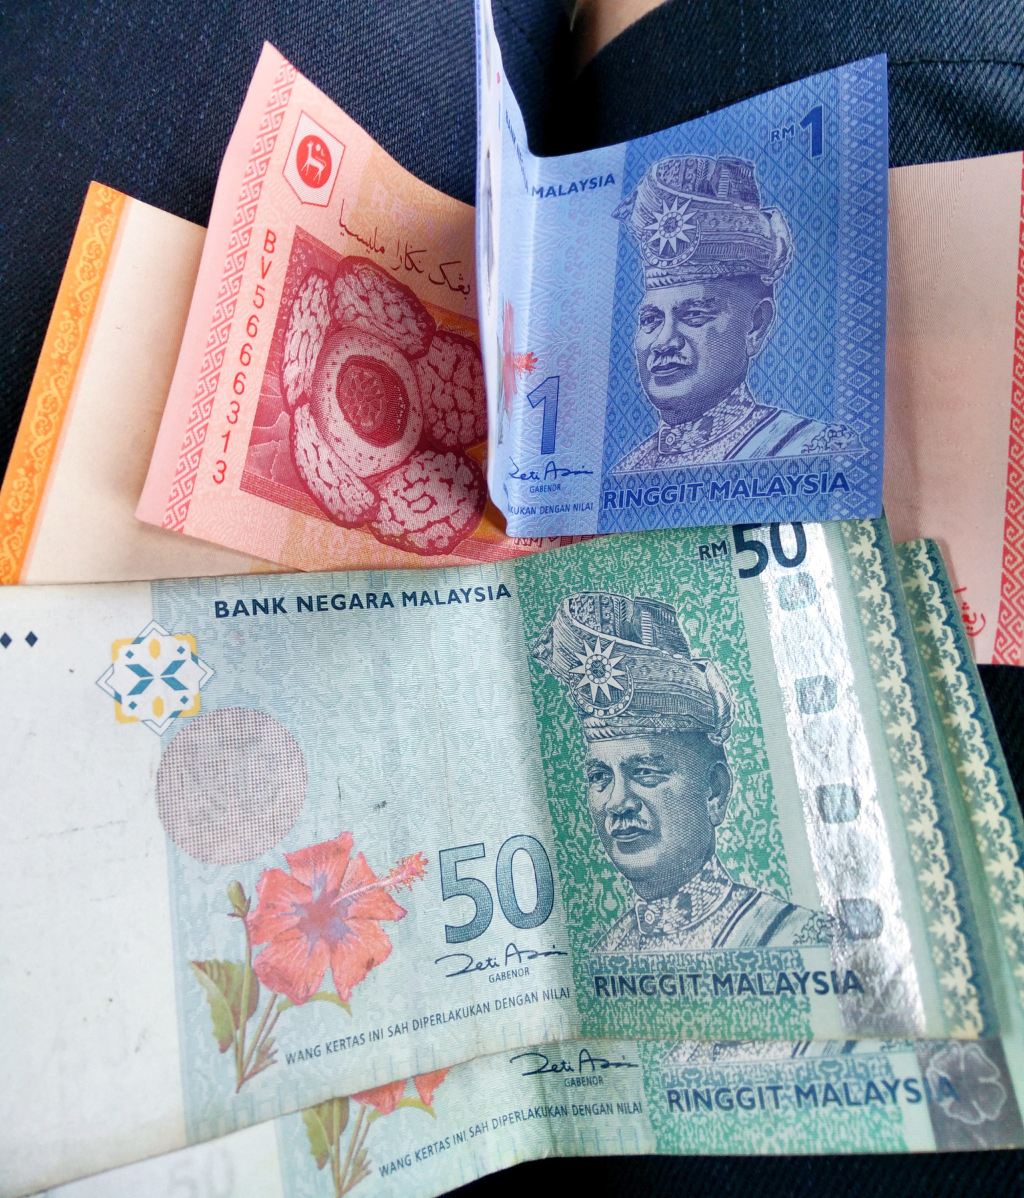 马来西亚20仙硬币,外国钱币,亚洲钱币,普通币/钞,普通金属币,单枚,se11789420,零售,7788收藏__收藏热线